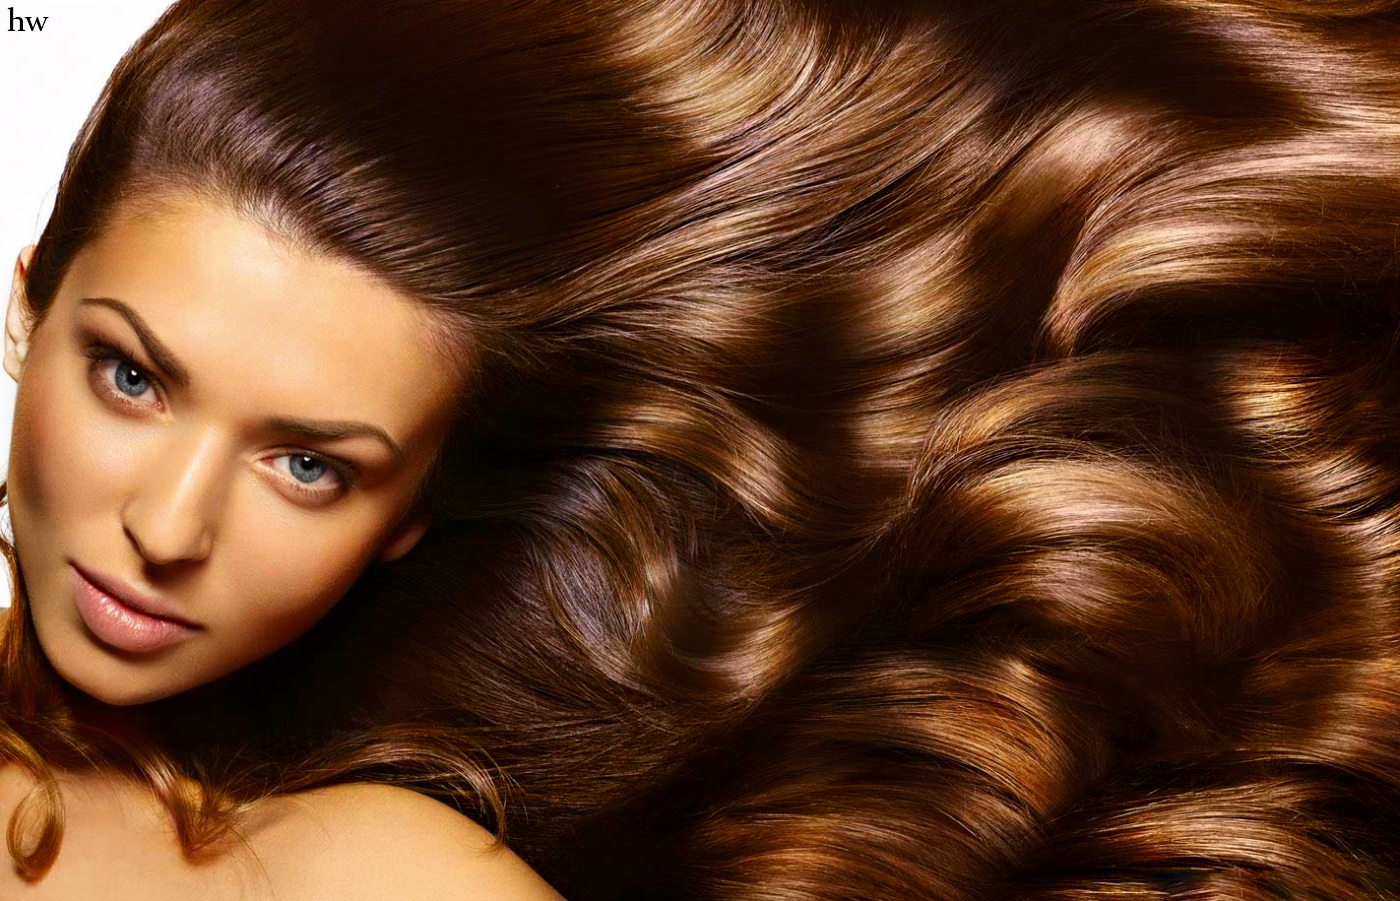 факторы влияющие на красоту и рост волос - рис